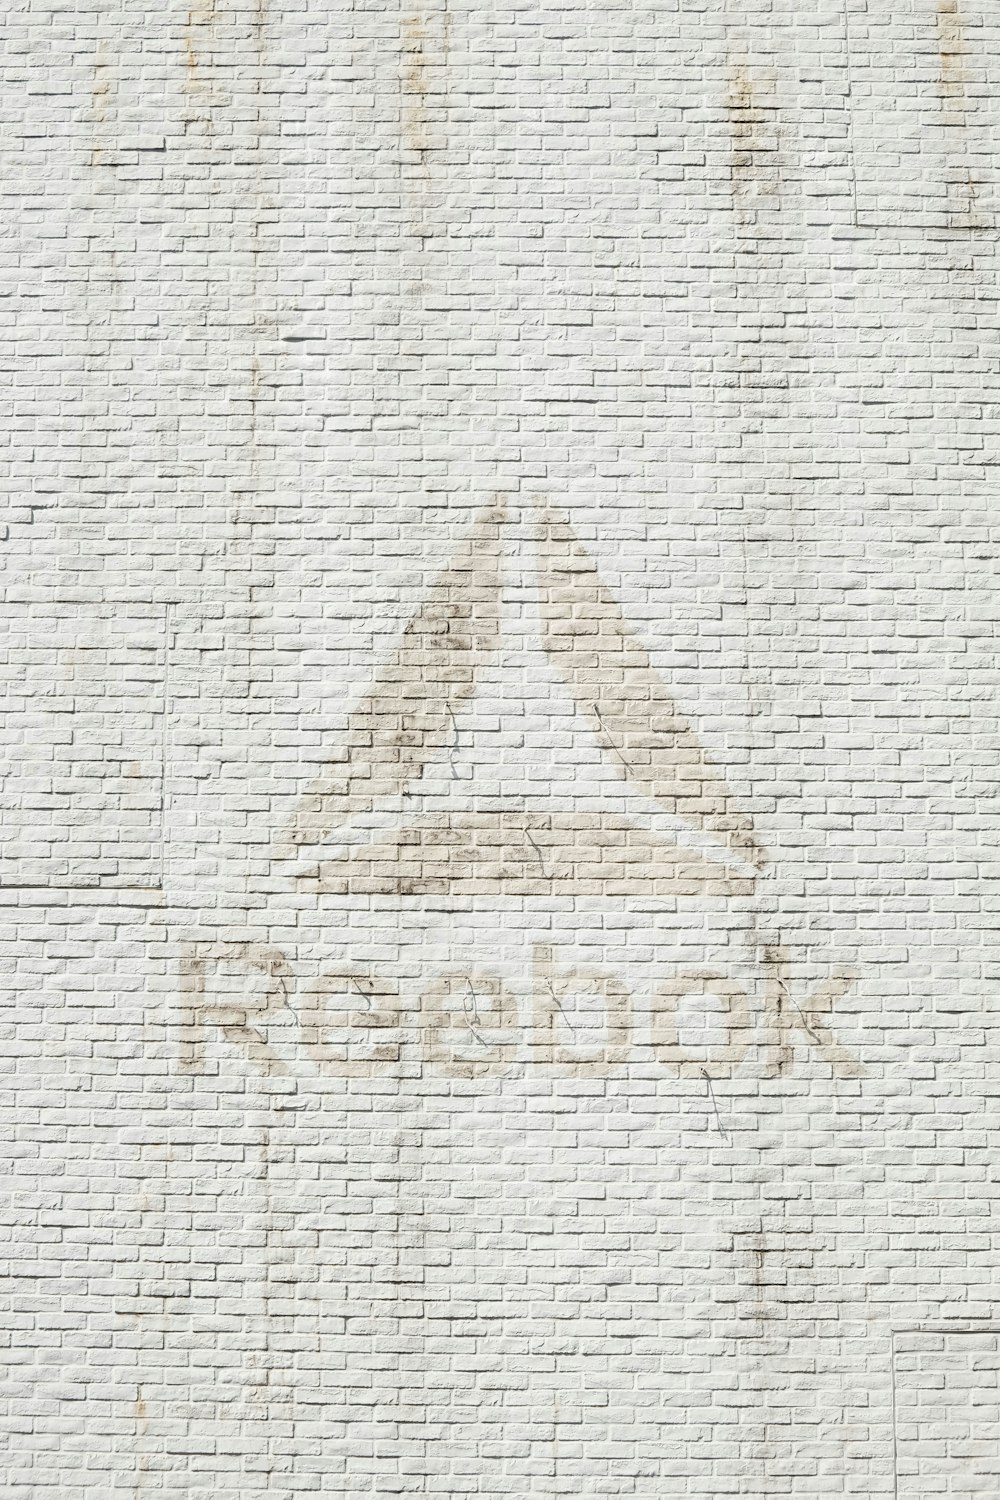 foto ravvicinata del logo Reebok sul muro